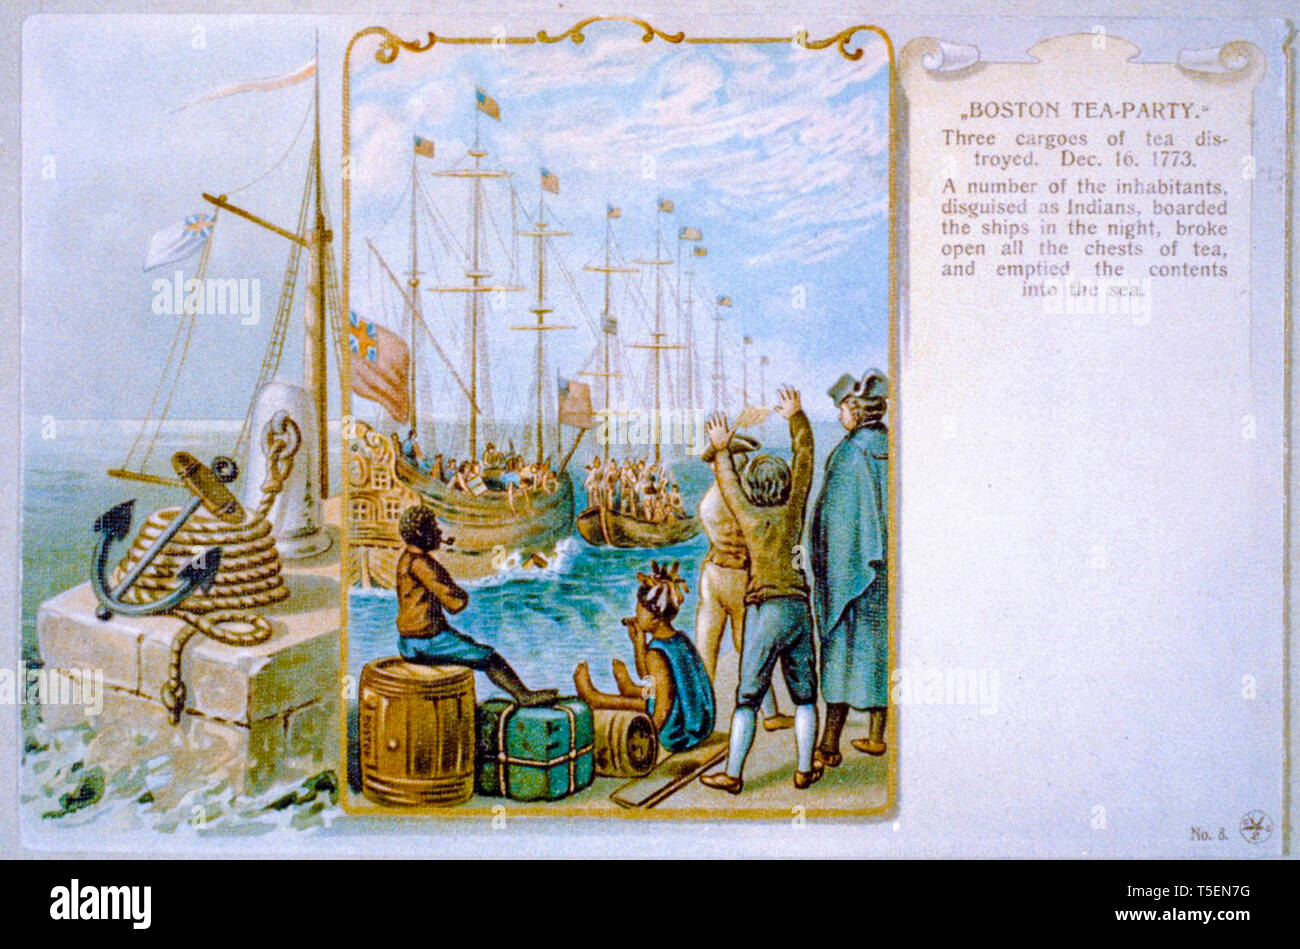 Boston Tea Party, trois cargaisons de thé détruites, 16 décembre 1773, peinture, 1903 Banque D'Images